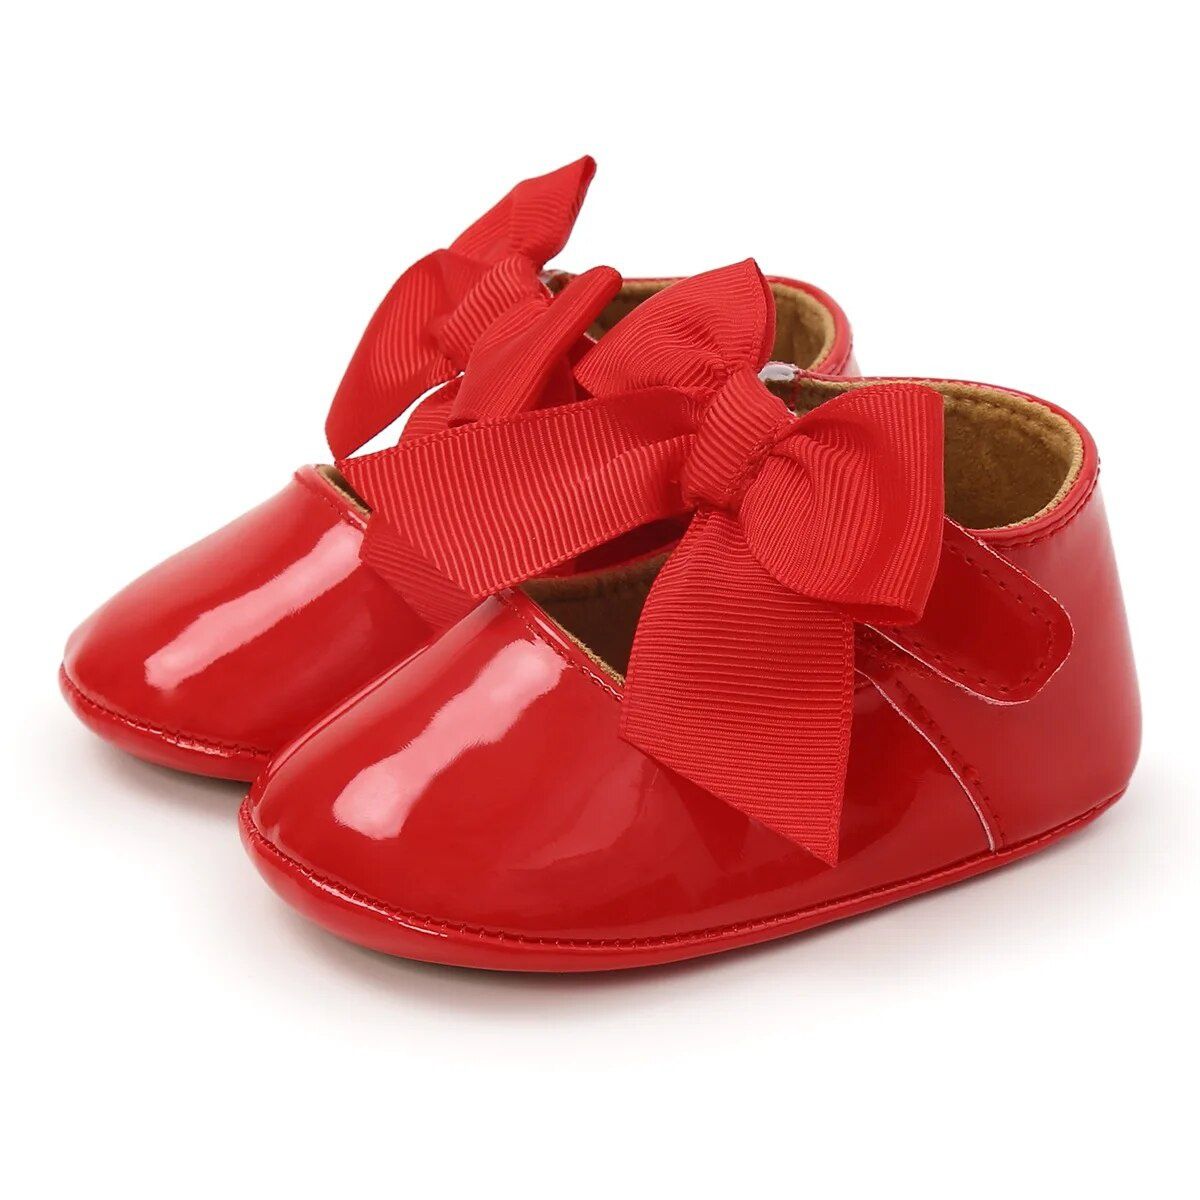 Czerwone buciki z kokardą niemowlęce niechodki 0-6 miesięcy 10,5 cm